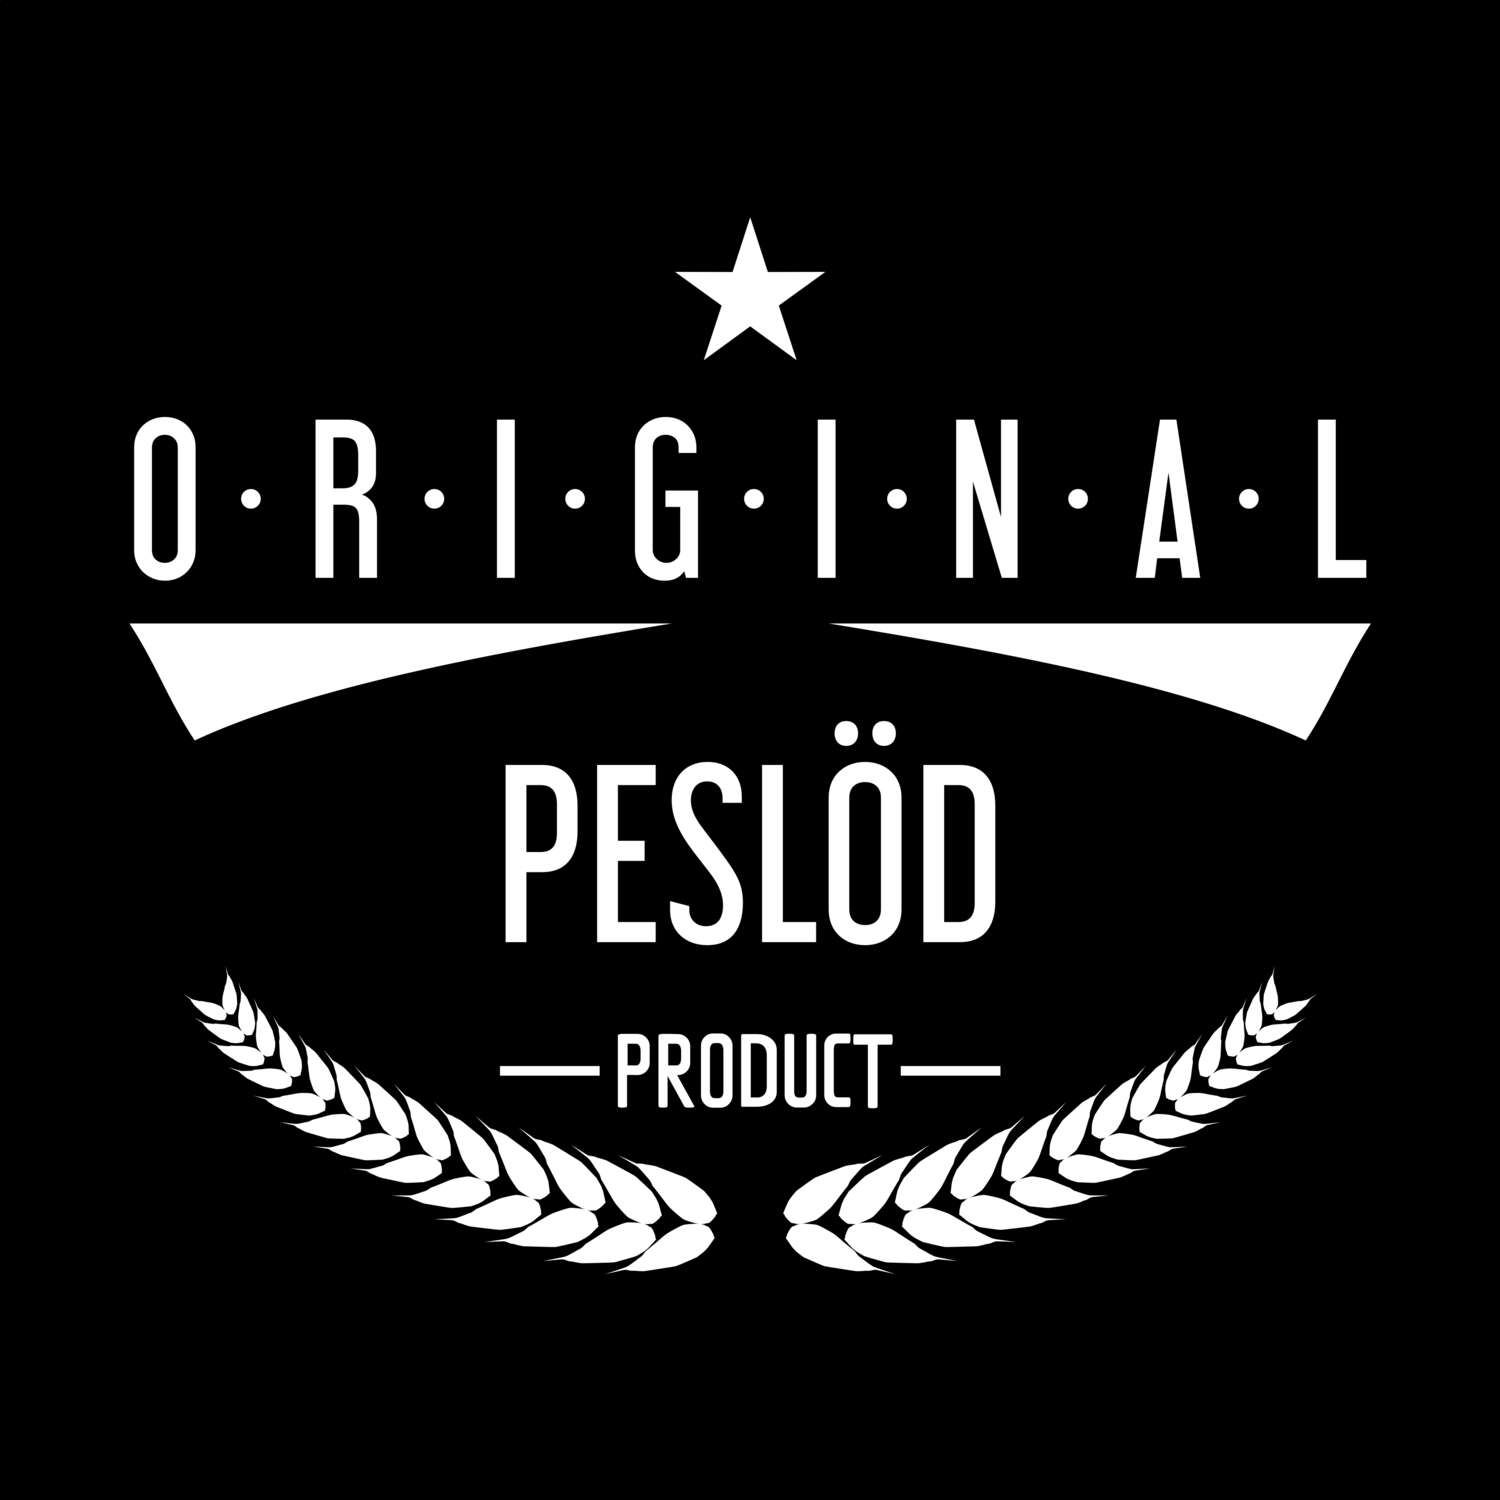 Peslöd T-Shirt »Original Product«